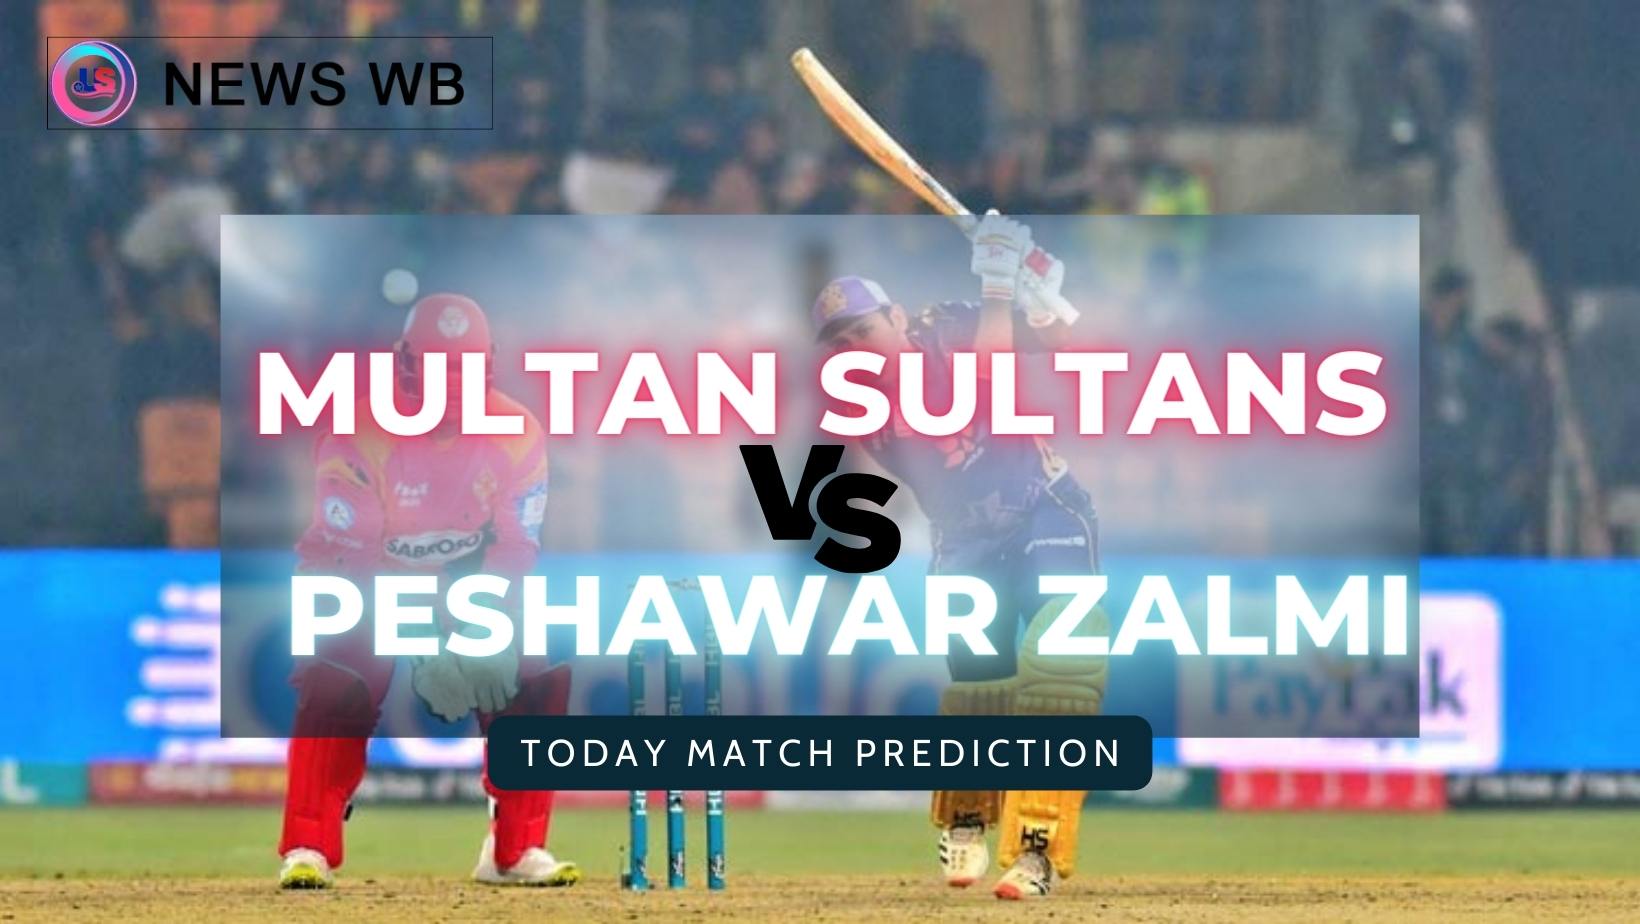 Today Match Prediction: MS vs PSZ Dream11 Team, Multan Sultans vs Peshawar Zalmi 9th Match, Who Will Win?